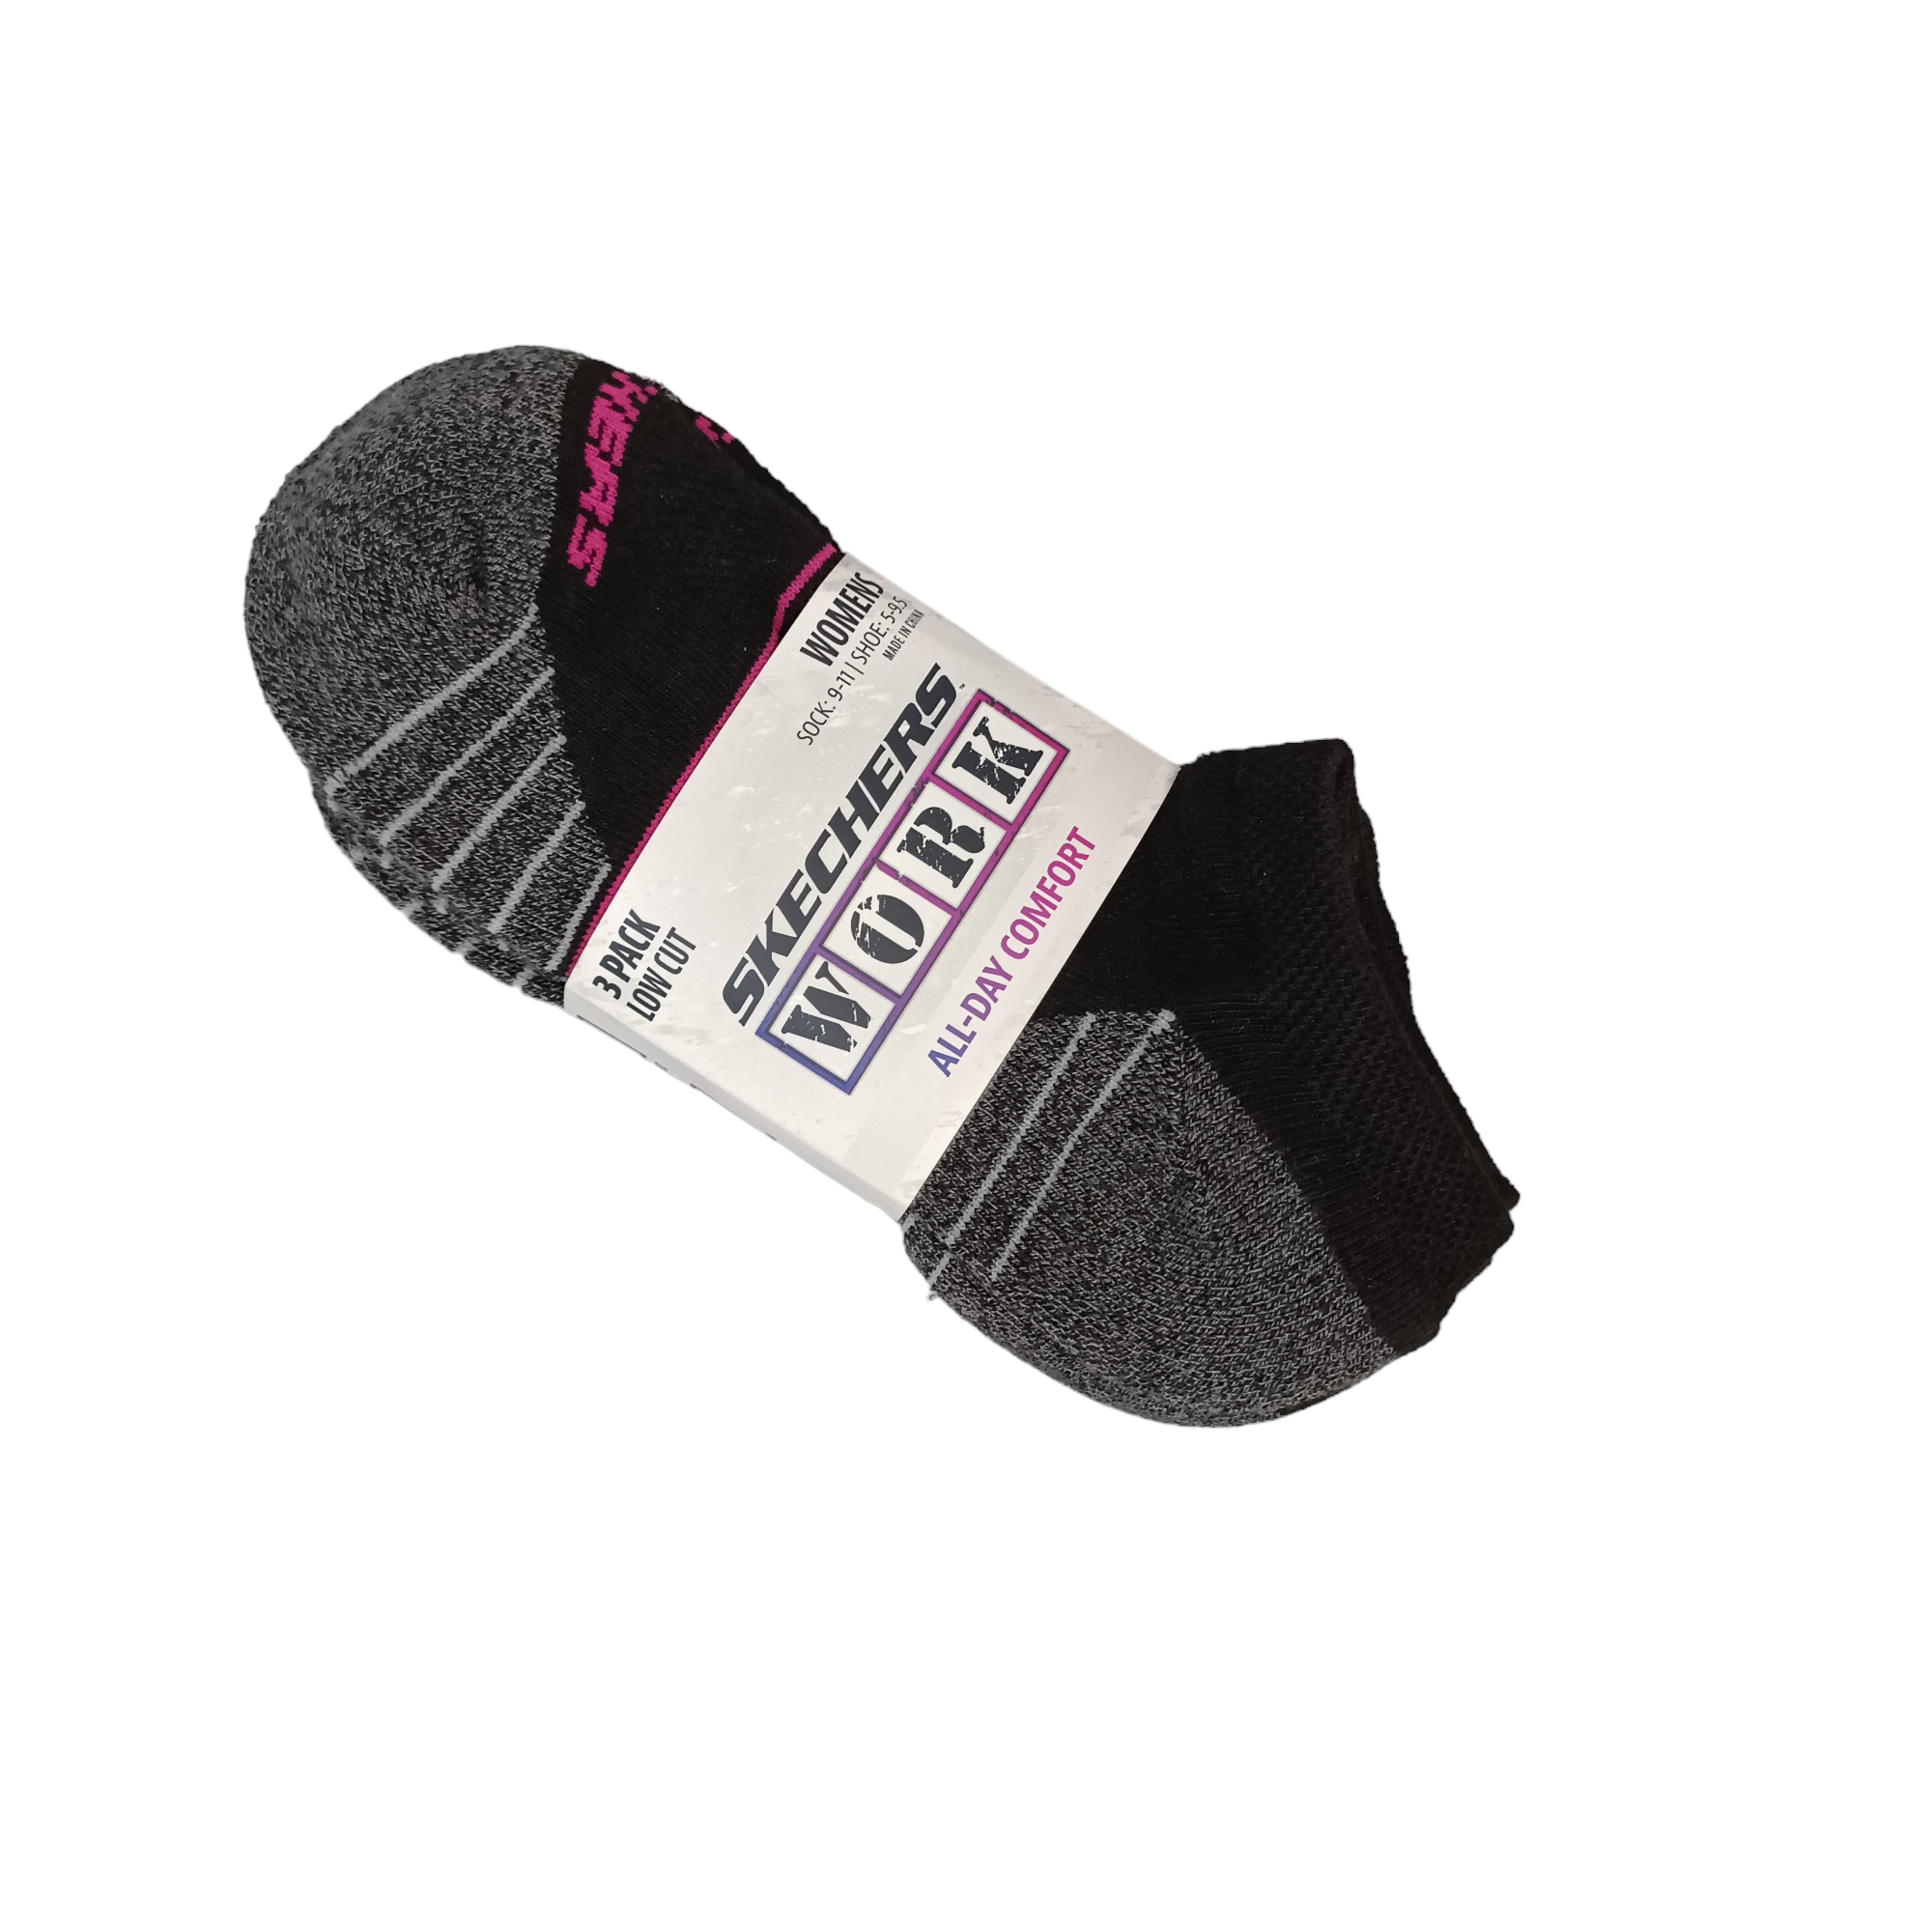 Extd Terry low Sock 3pk - shoe&me - Skechers - Socks - Socks, Womens